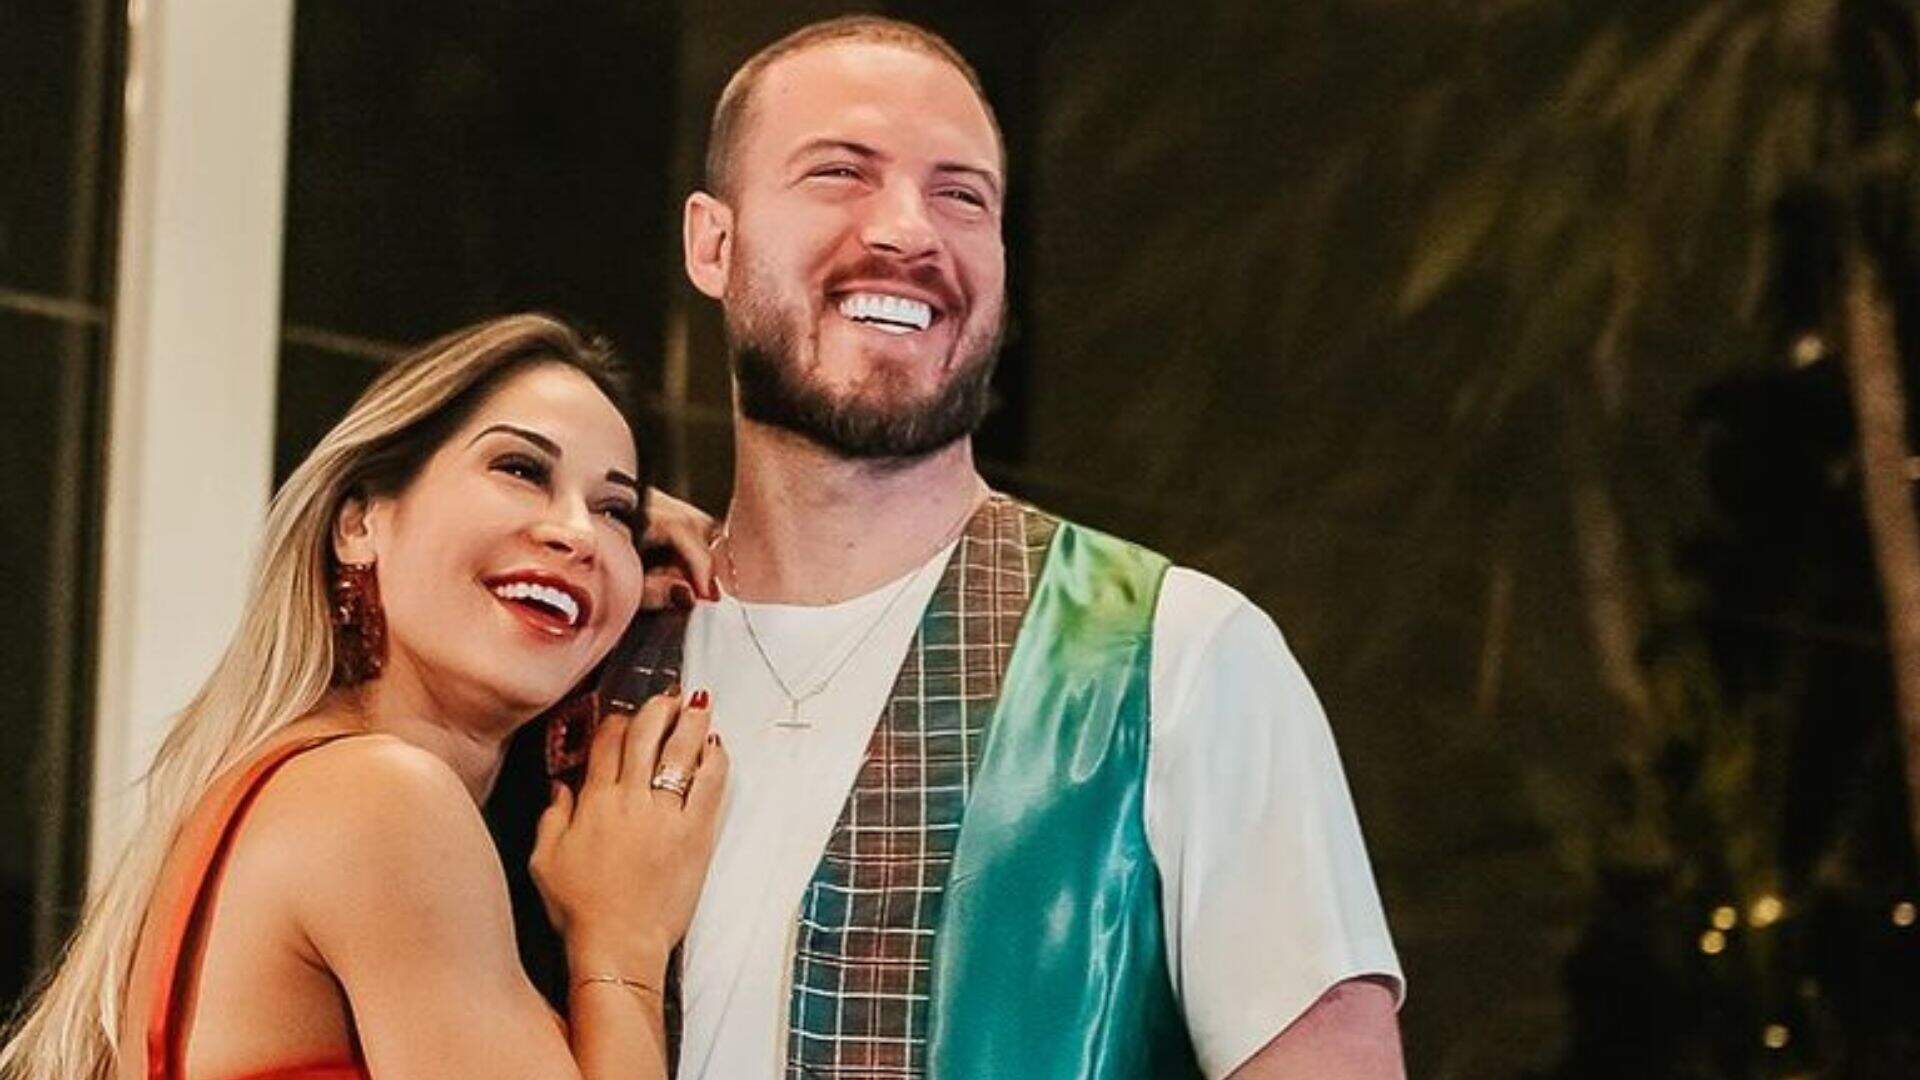 Maíra Cardi e Thiago Nigro se casam no civil: “Em comunhão total de bens” - Metropolitana FM